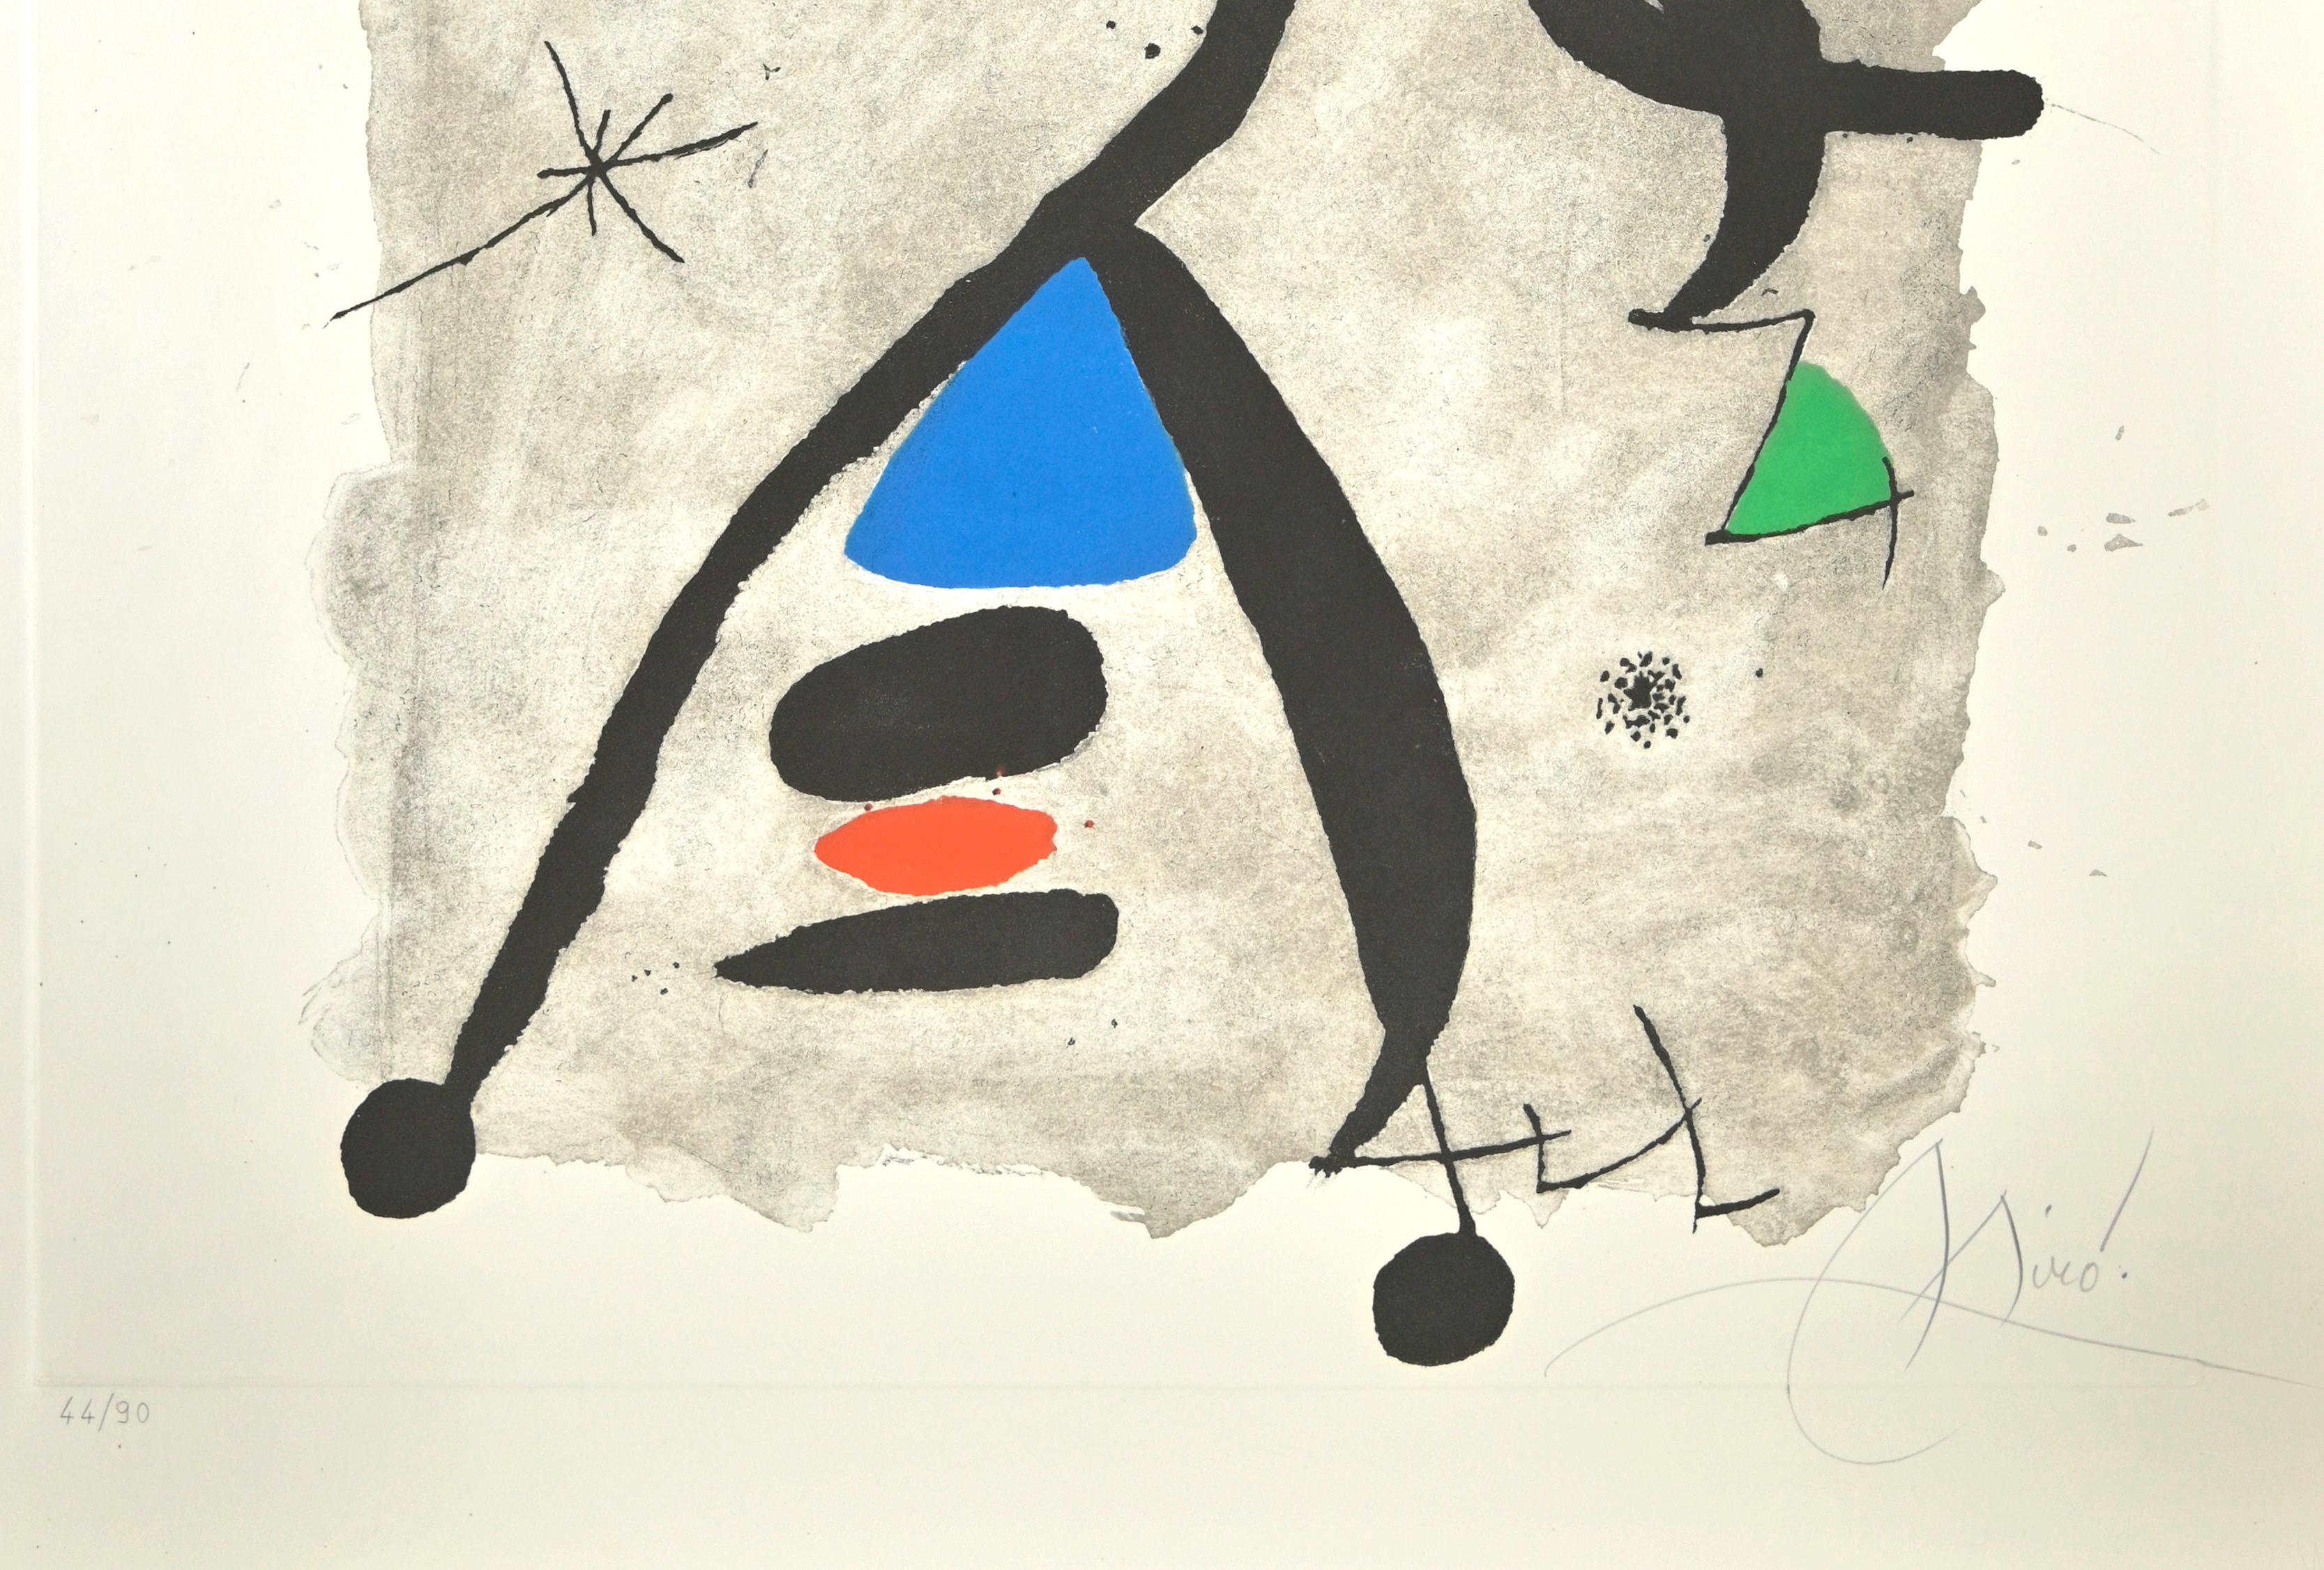 Für Alberti, für Spanien! - Radierung von Joan Mirò - 1975 (Surrealismus), Print, von Joan Miró